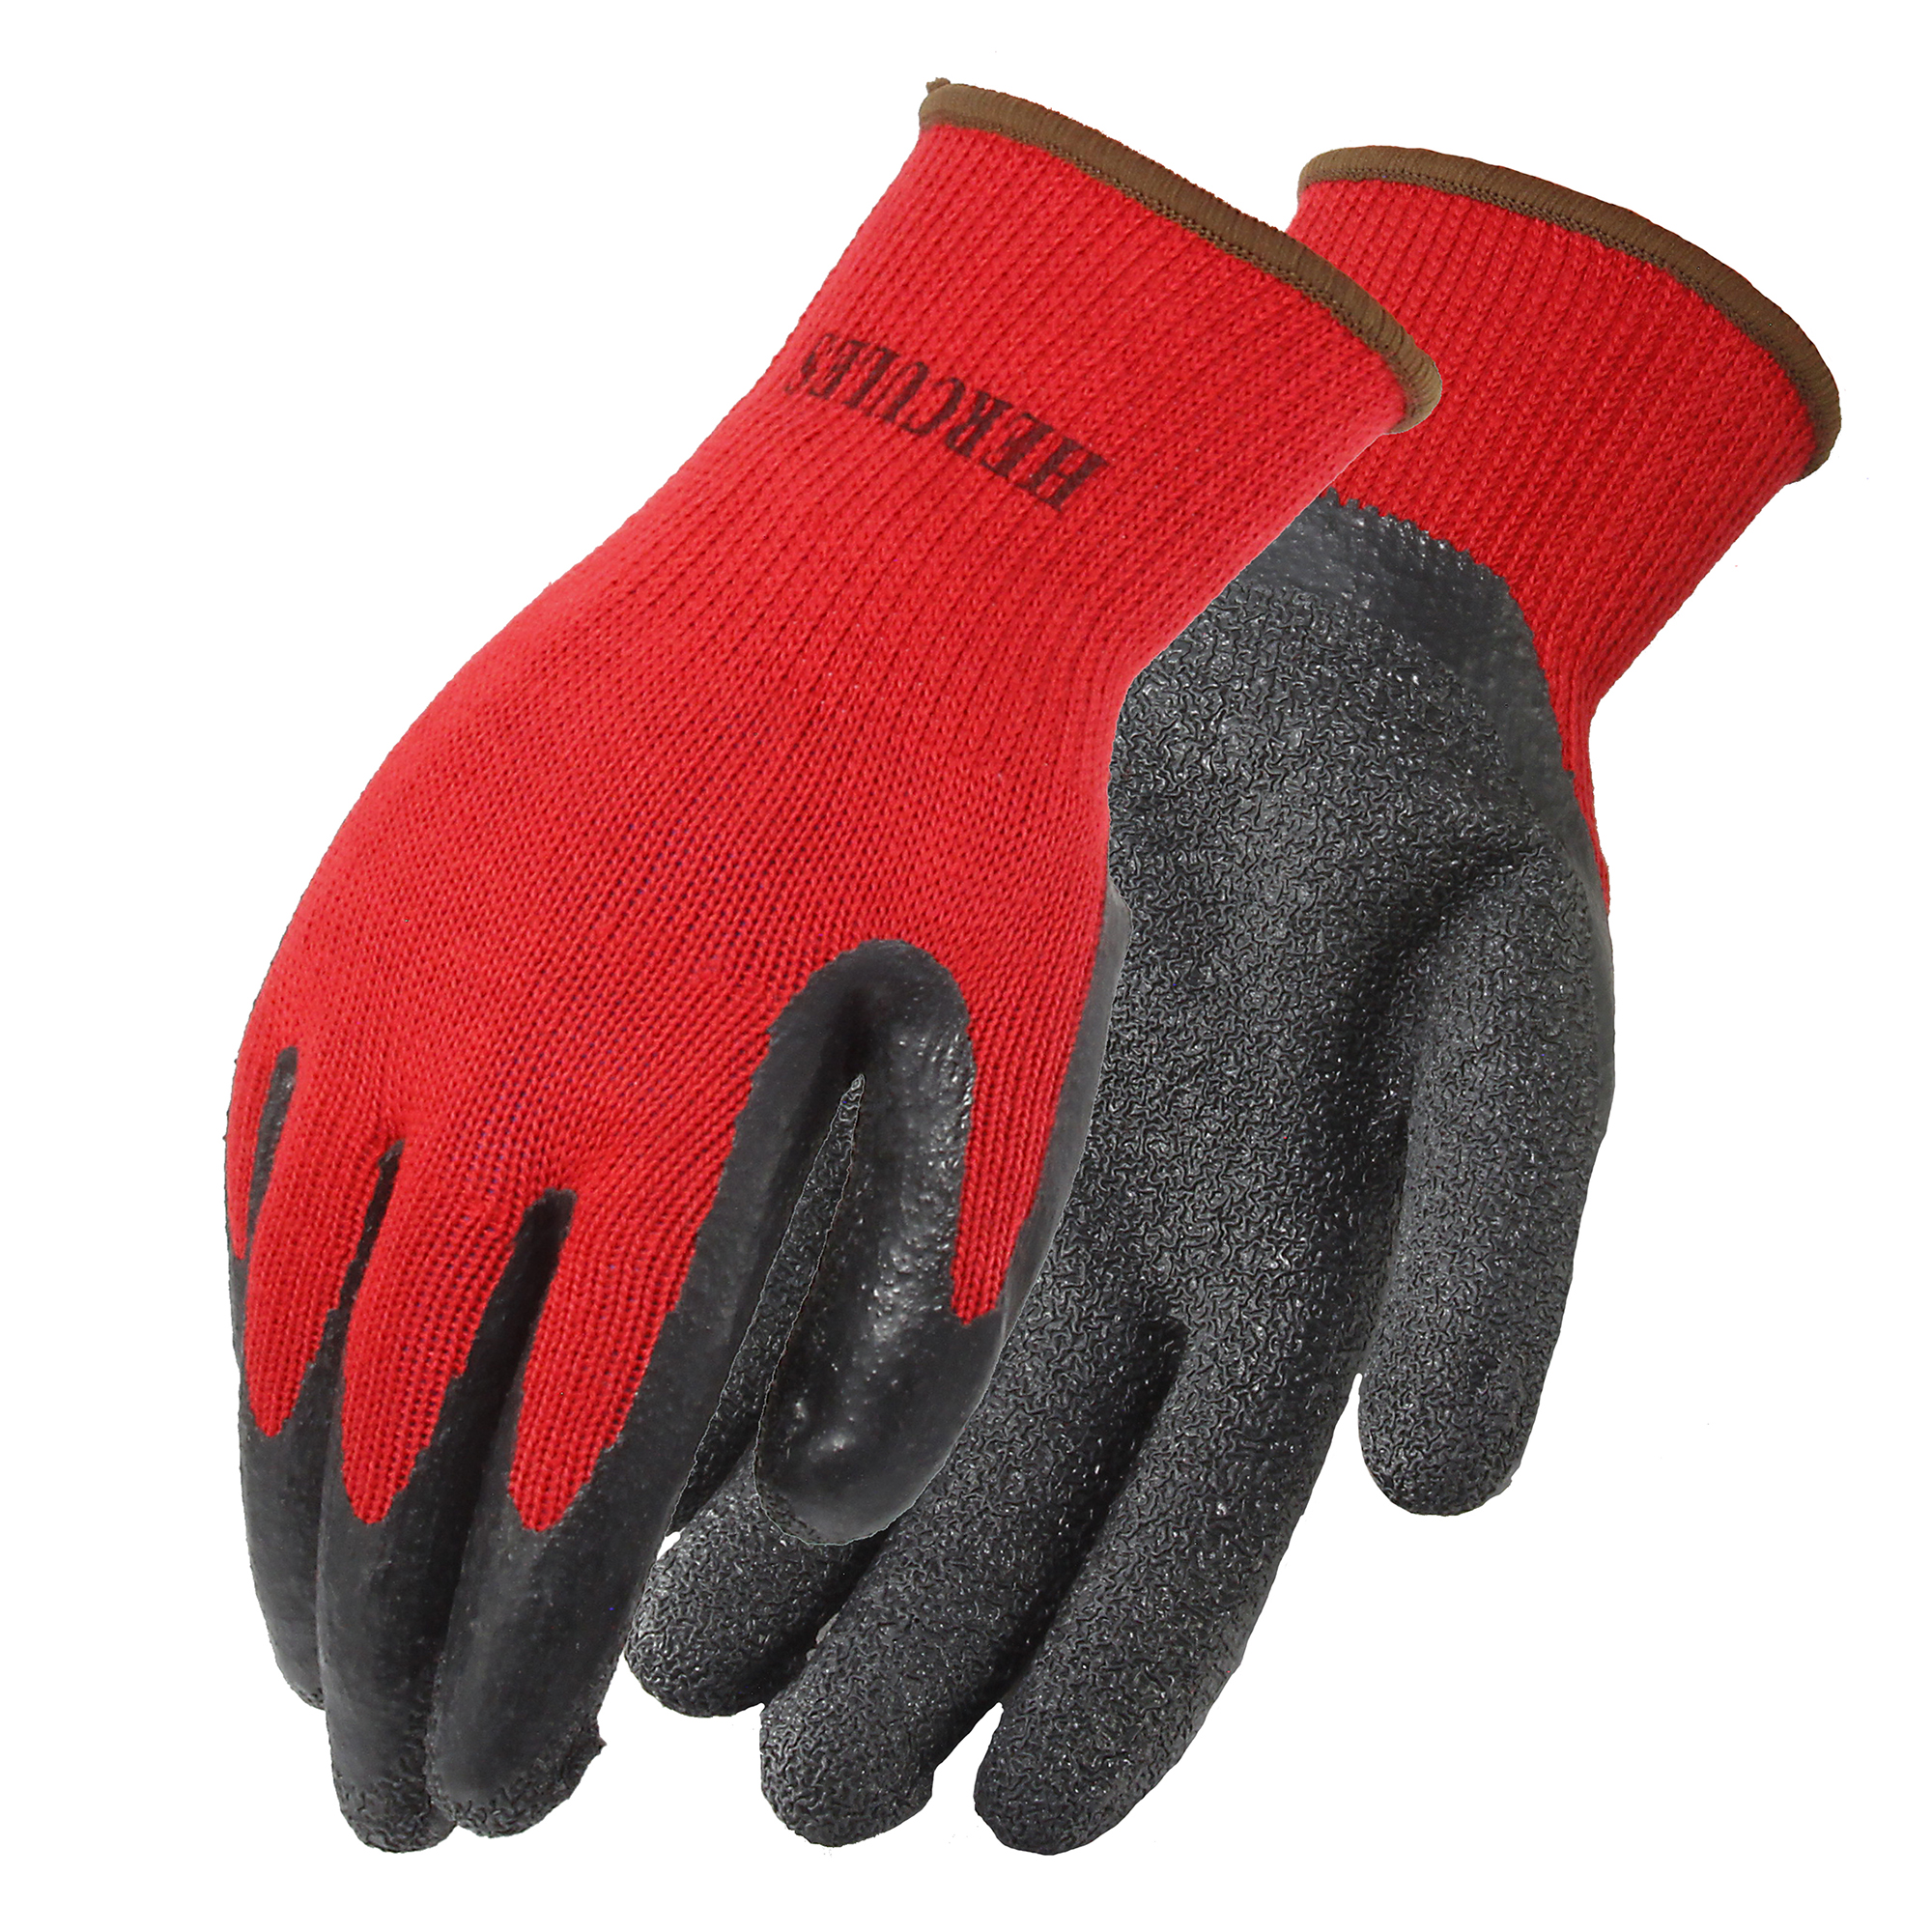 Hercules Gloves, 1 Pair